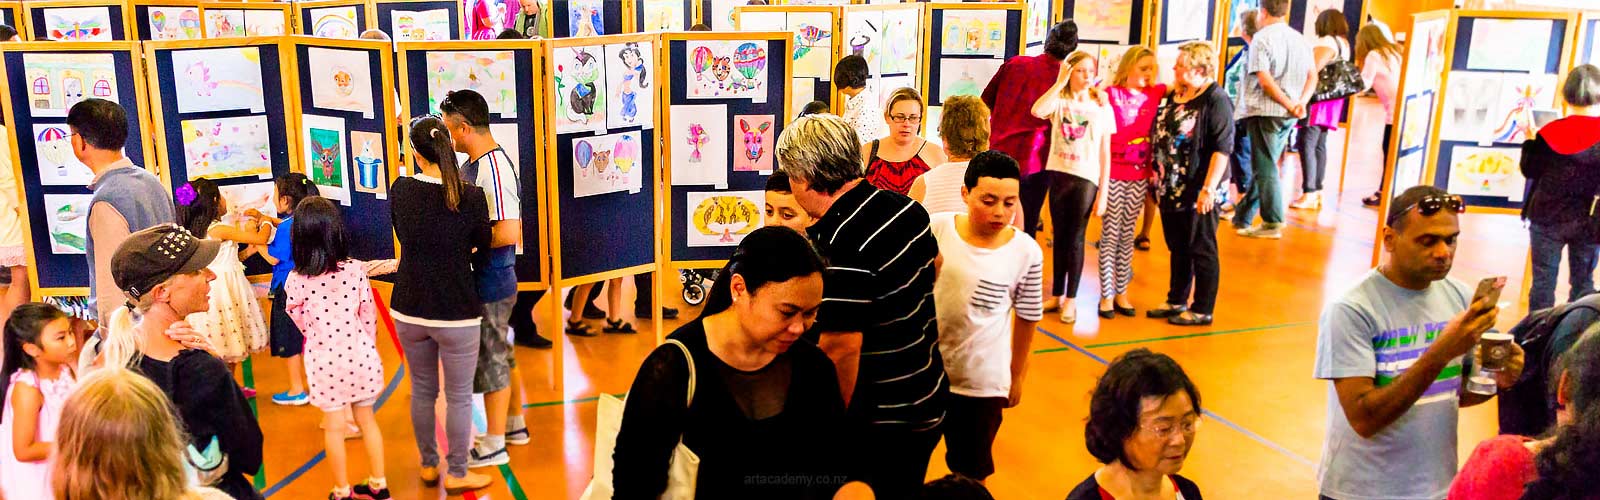 NZ Art Academy Kids Art Show in Auckland